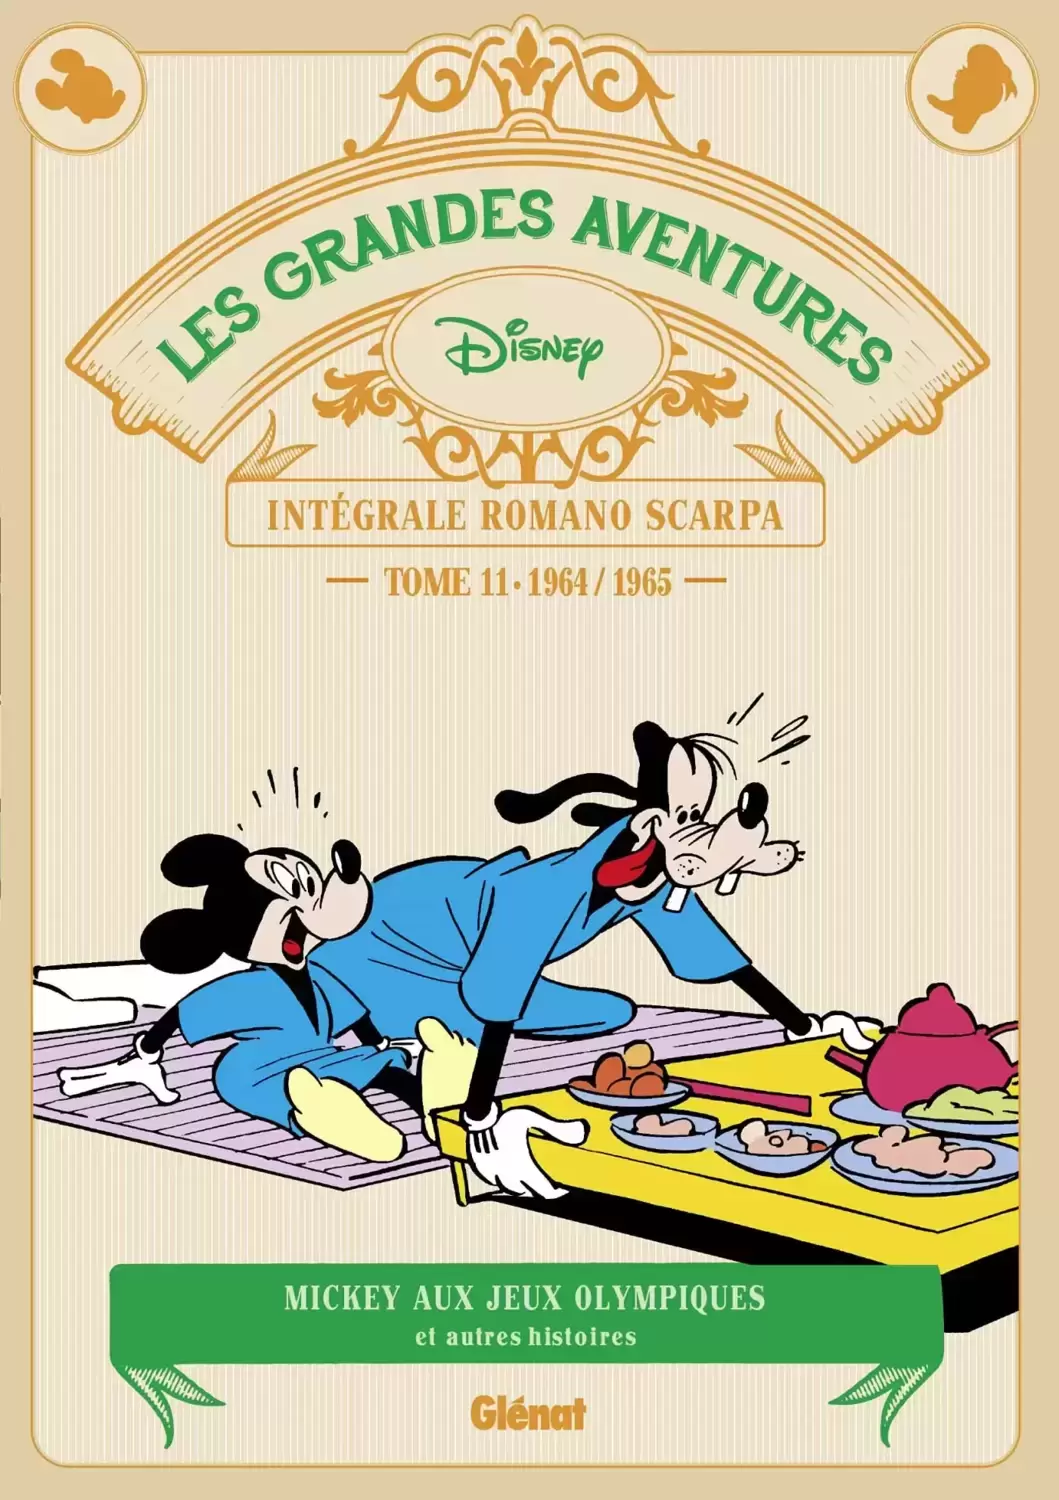 Les Grandes aventures de Romano Scarpa - Mickey aux Jeux olympiques et autres histoires (1964/1965)